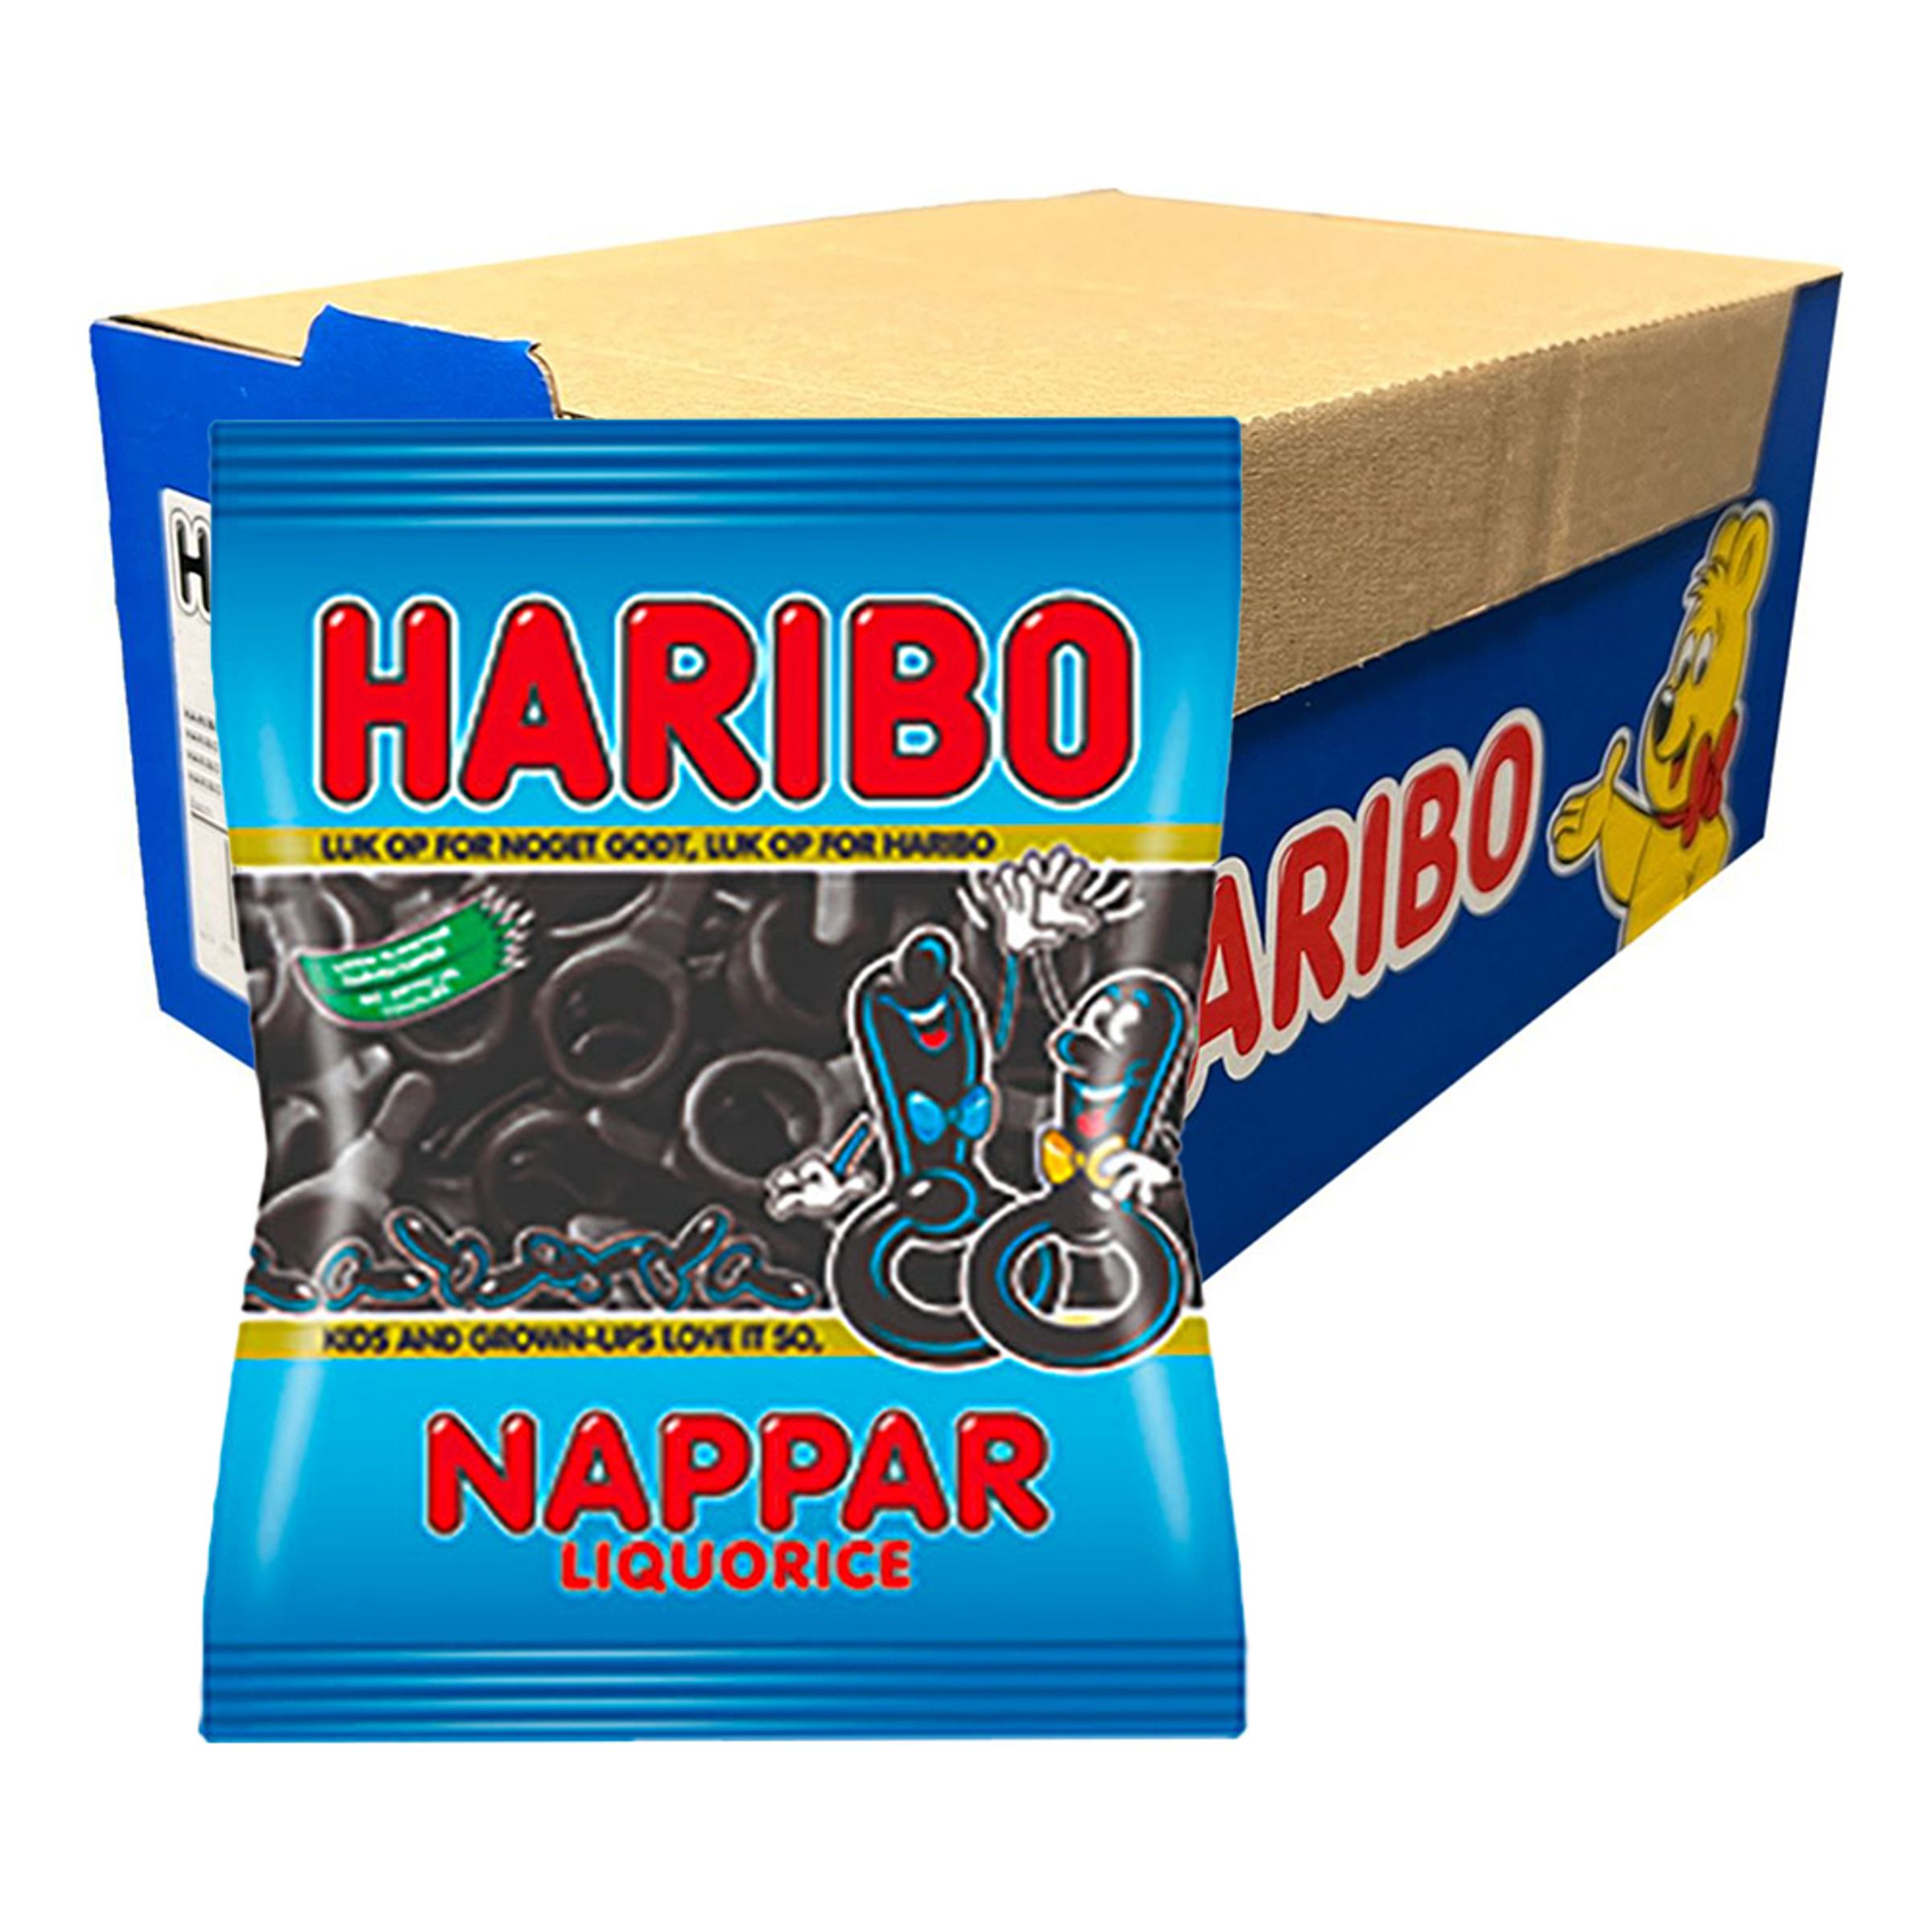 Haribo Salta Nappar Storpack - 20-pack